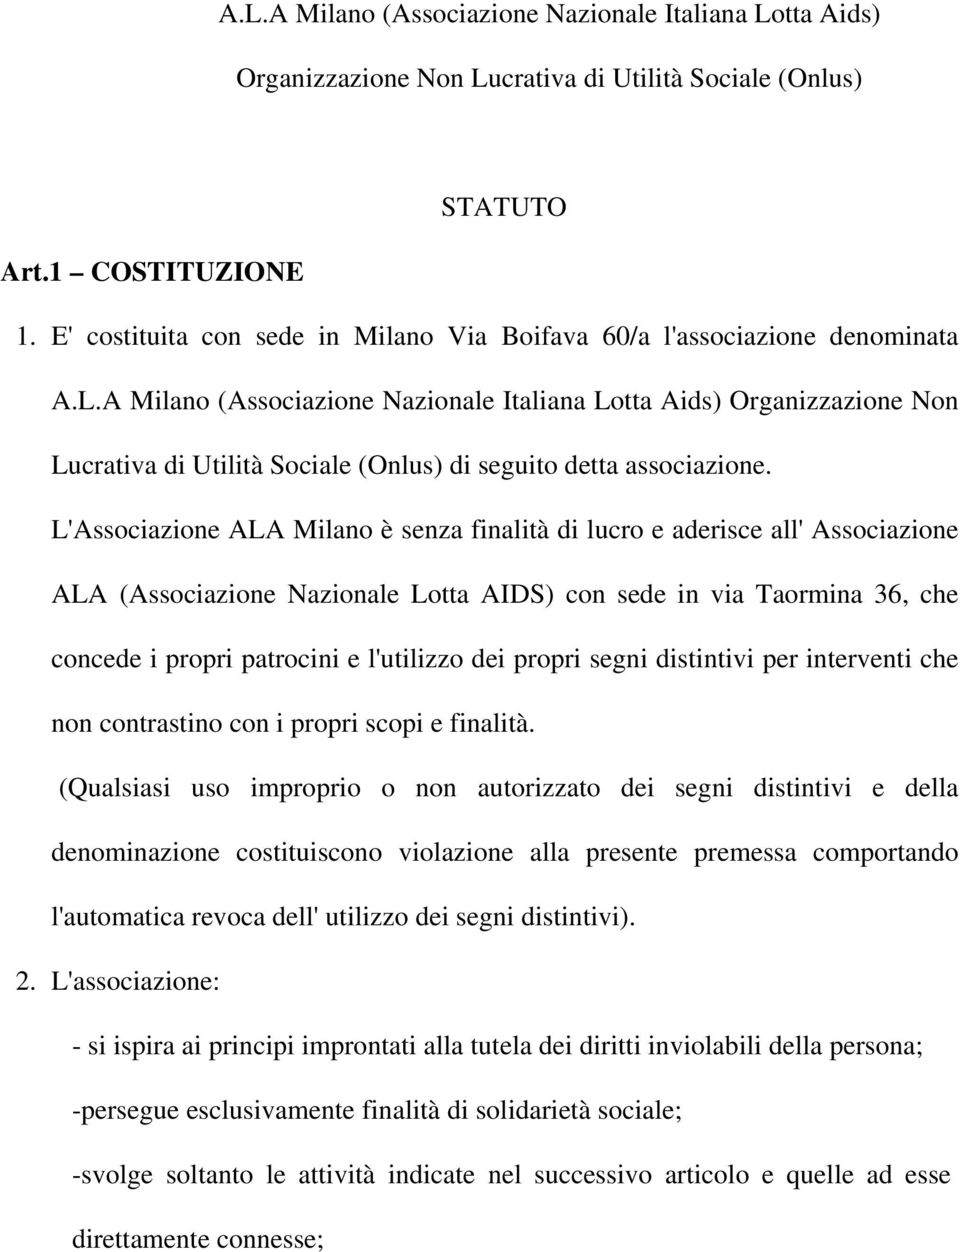 A Milano (Associazione Nazionale Italiana Lotta Aids) Organizzazione Non Lucrativa di Utilità Sociale (Onlus) di seguito detta associazione.